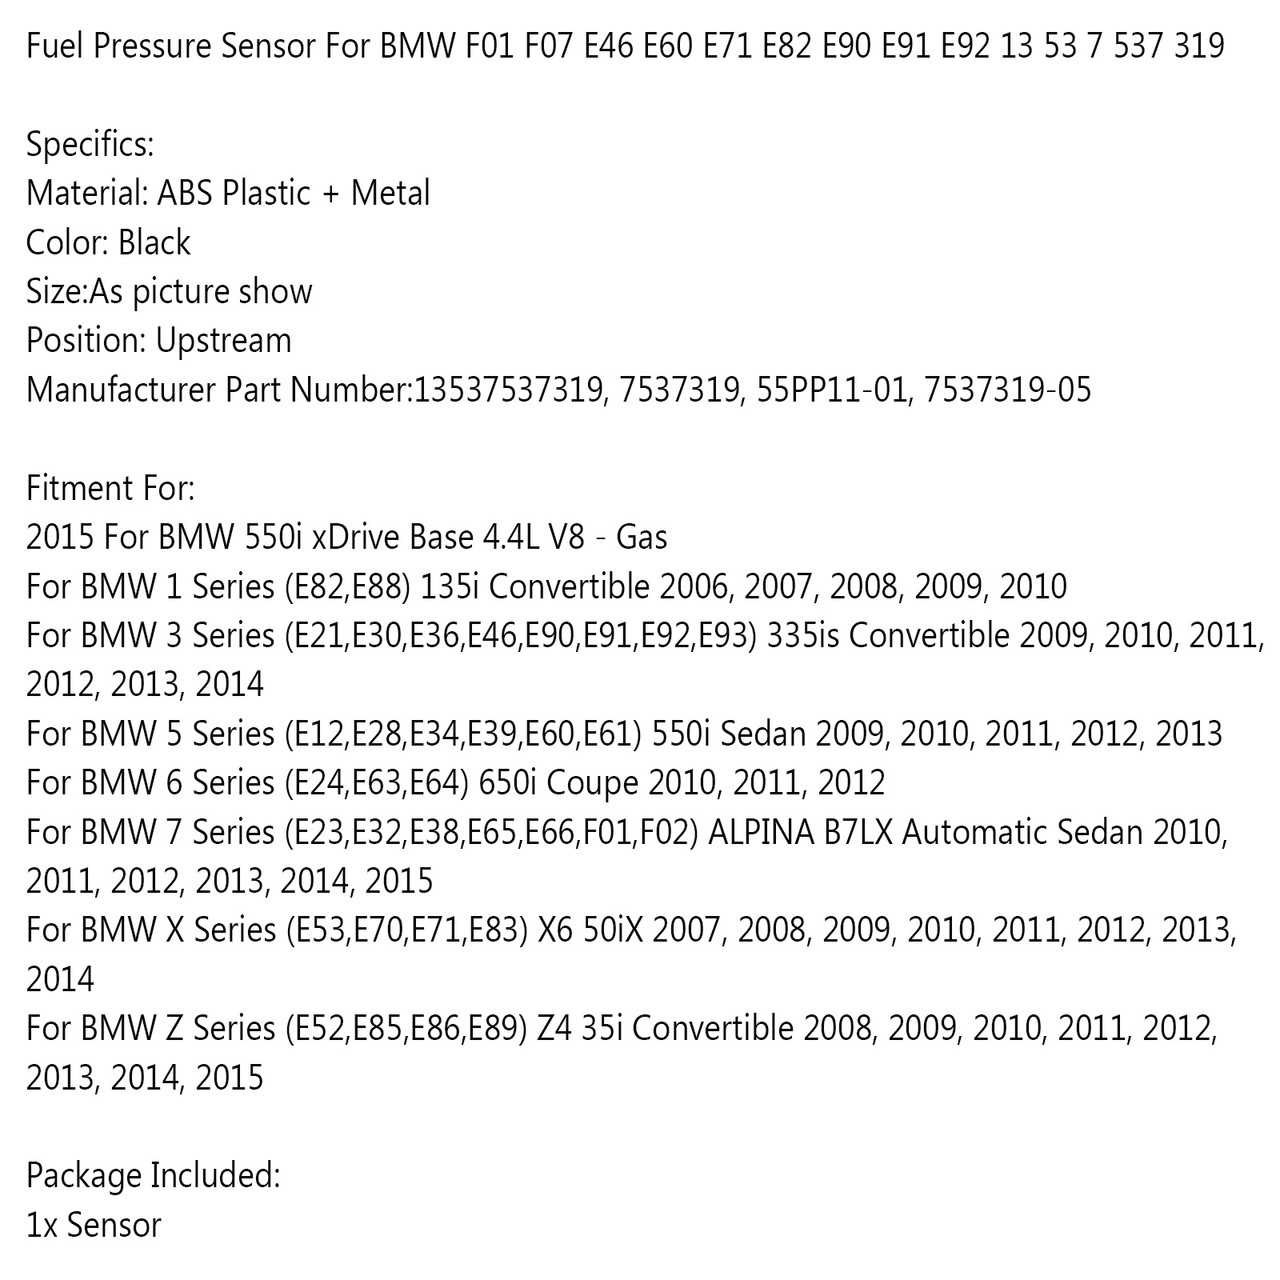 Fuel Pressure Sensor Fit For BMW 550i xDrive Base 4.4L V8 2015 1 Series 135i Convertible 06-10